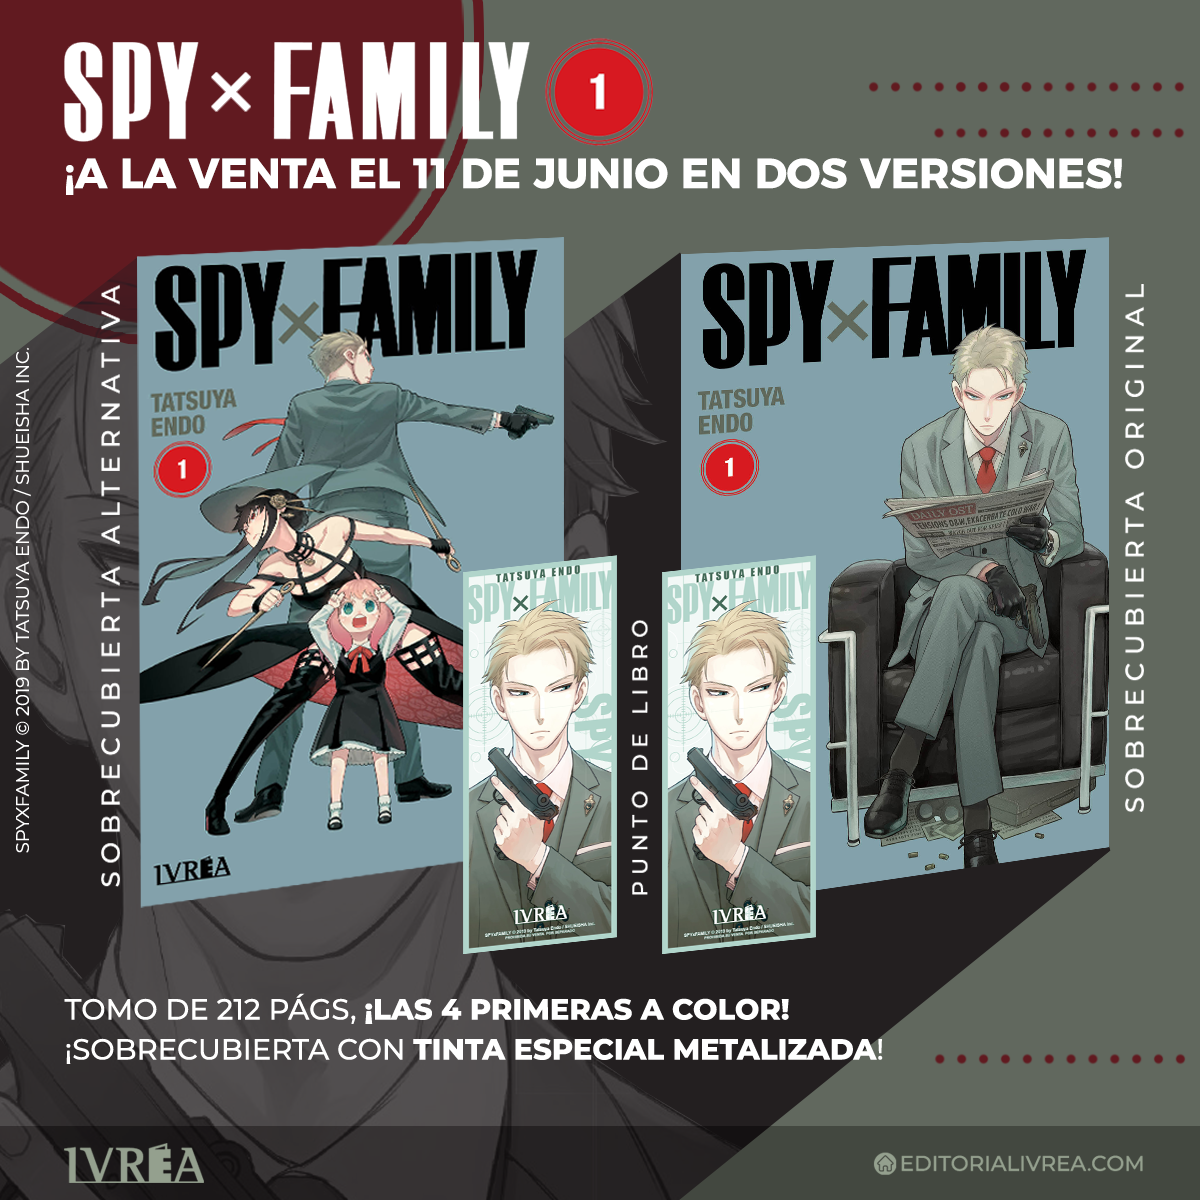 El 11 de junio llega Spy x Family con sorpresas! – ¡Veremos a